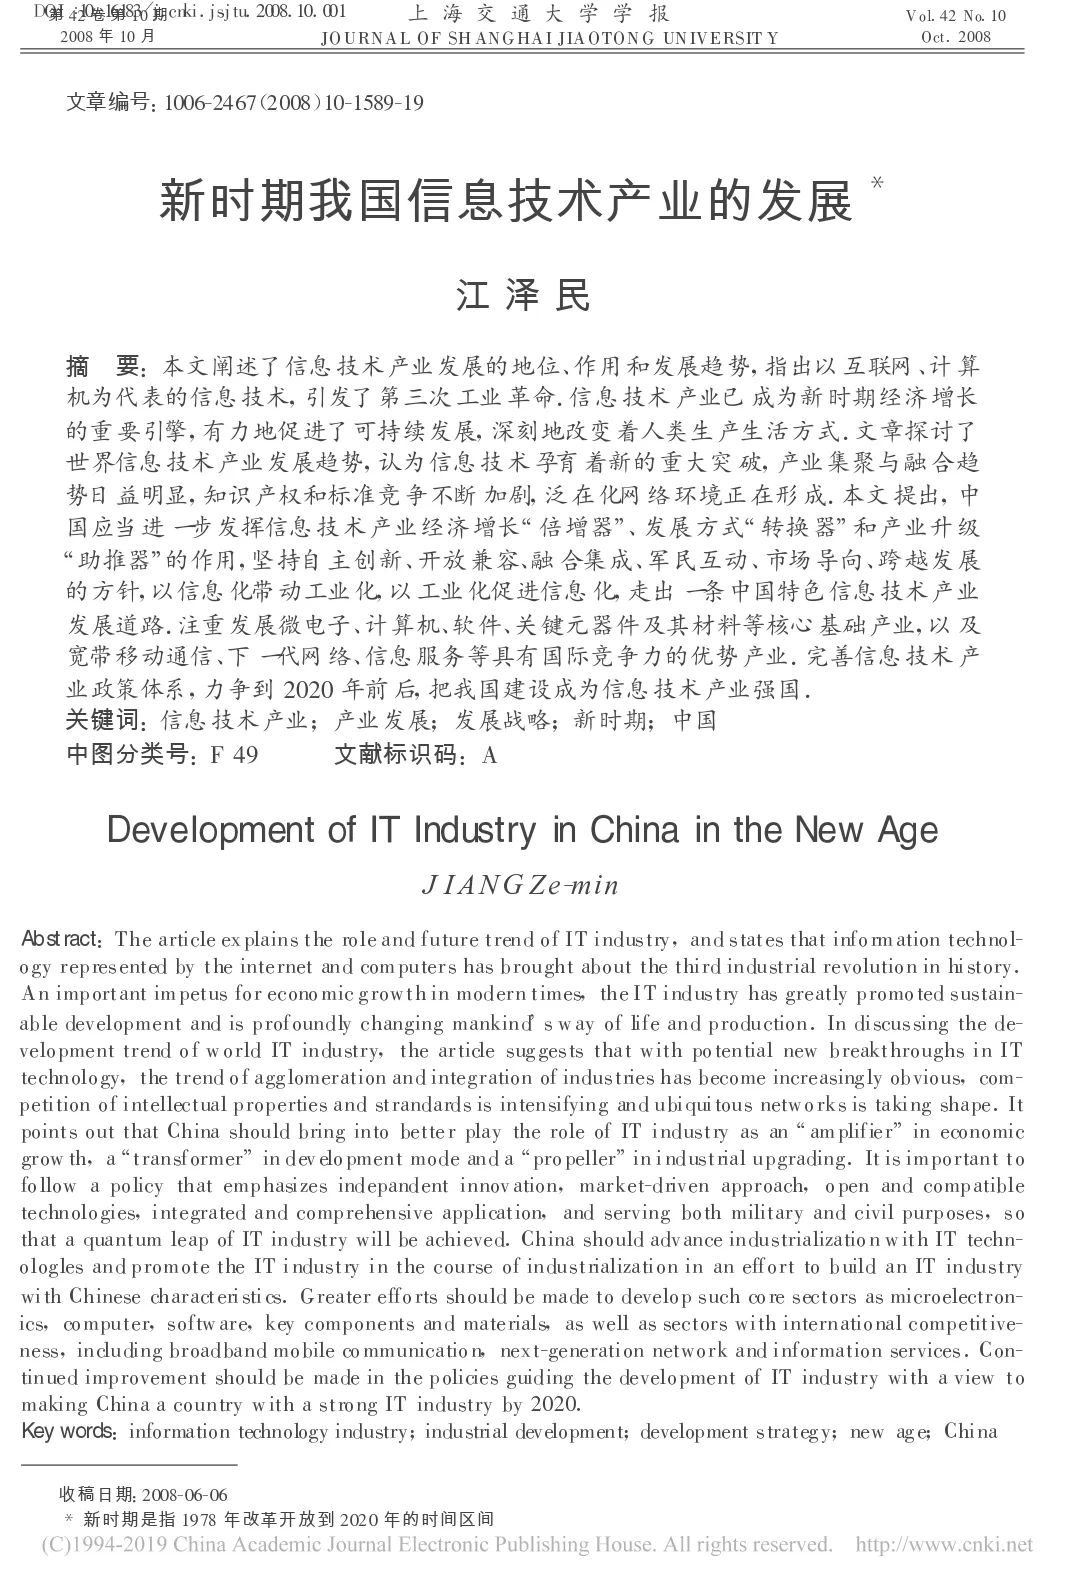 江泽民论文《中国 IT 产业发展》